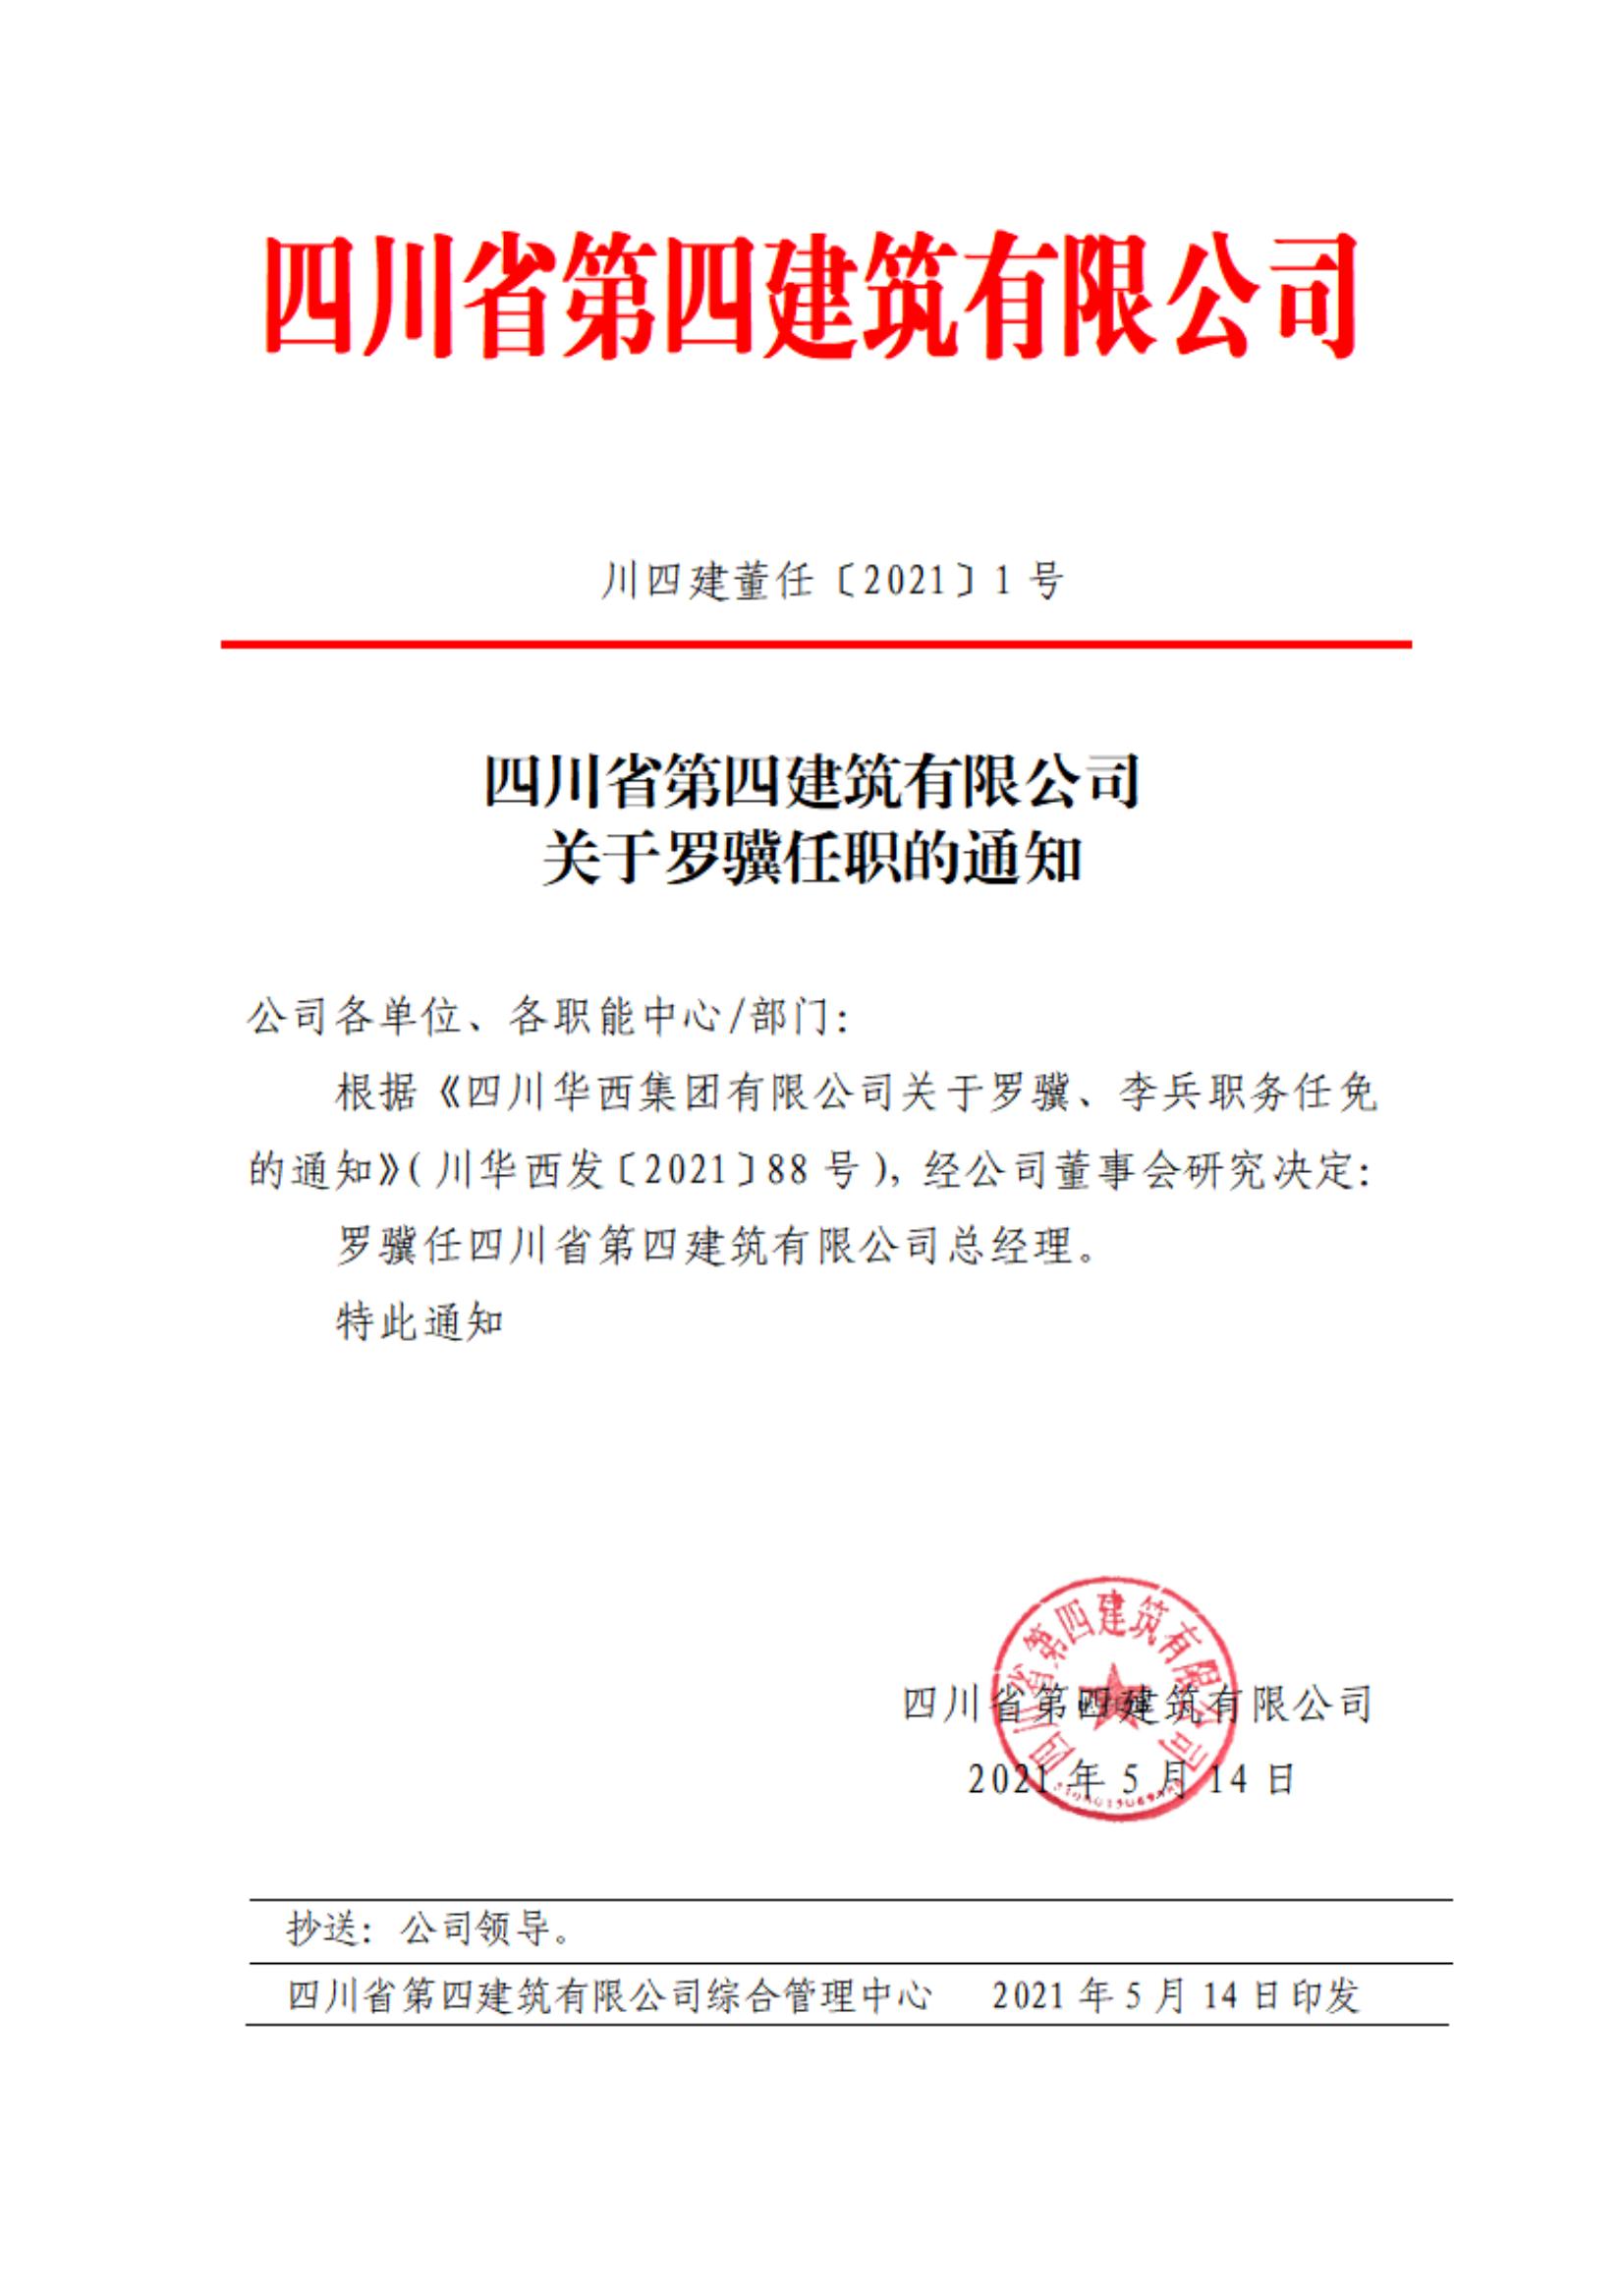 77779193永利(中国)集团有限公司关于罗骥任职的通知_00